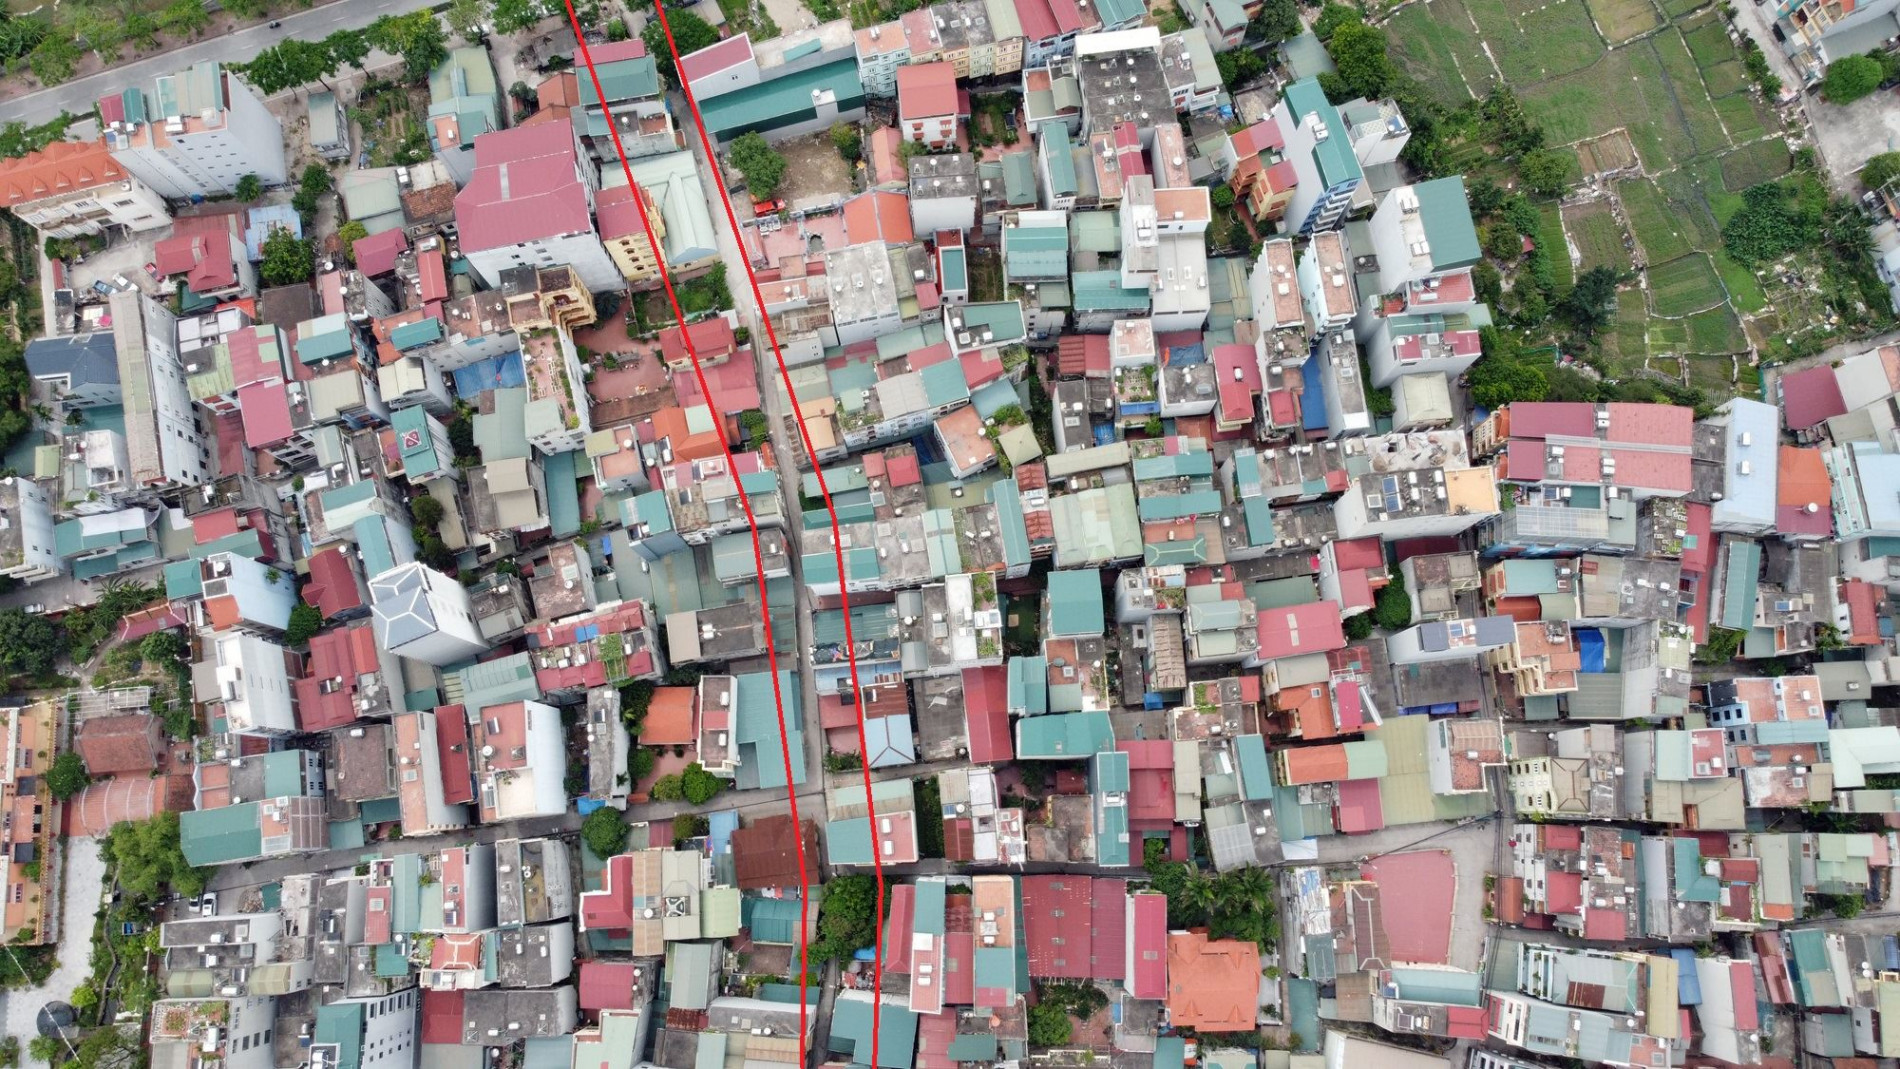 Những khu đất sắp thu hồi để mở đường ở xã Thanh Liệt, Thanh Trì, Hà Nội (phần 10)